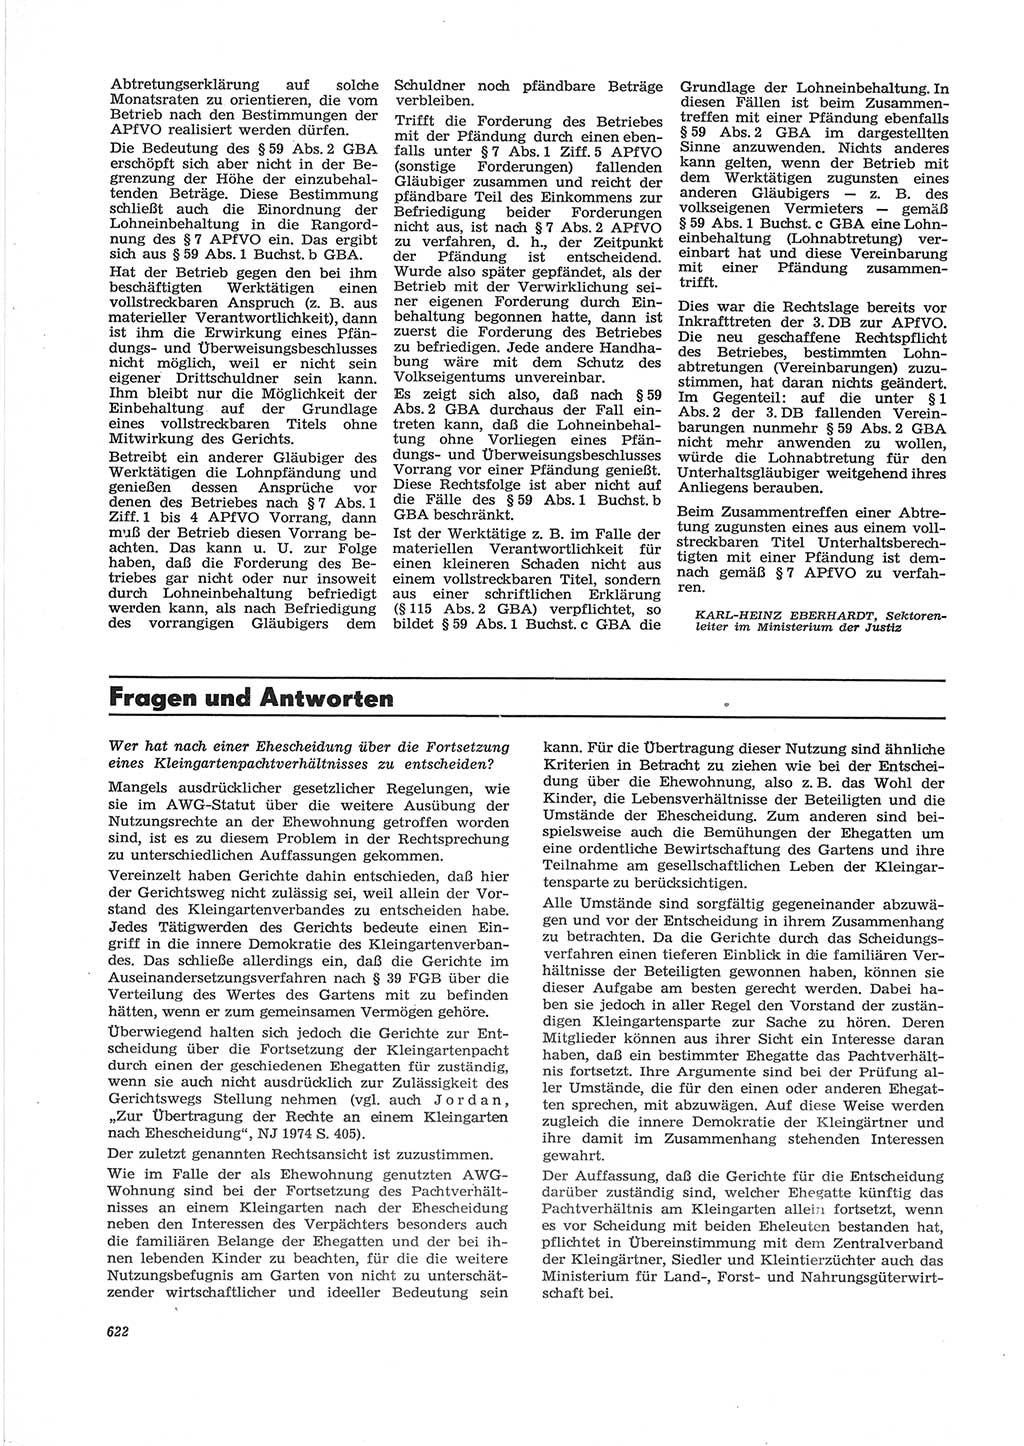 Neue Justiz (NJ), Zeitschrift für Recht und Rechtswissenschaft [Deutsche Demokratische Republik (DDR)], 28. Jahrgang 1974, Seite 622 (NJ DDR 1974, S. 622)